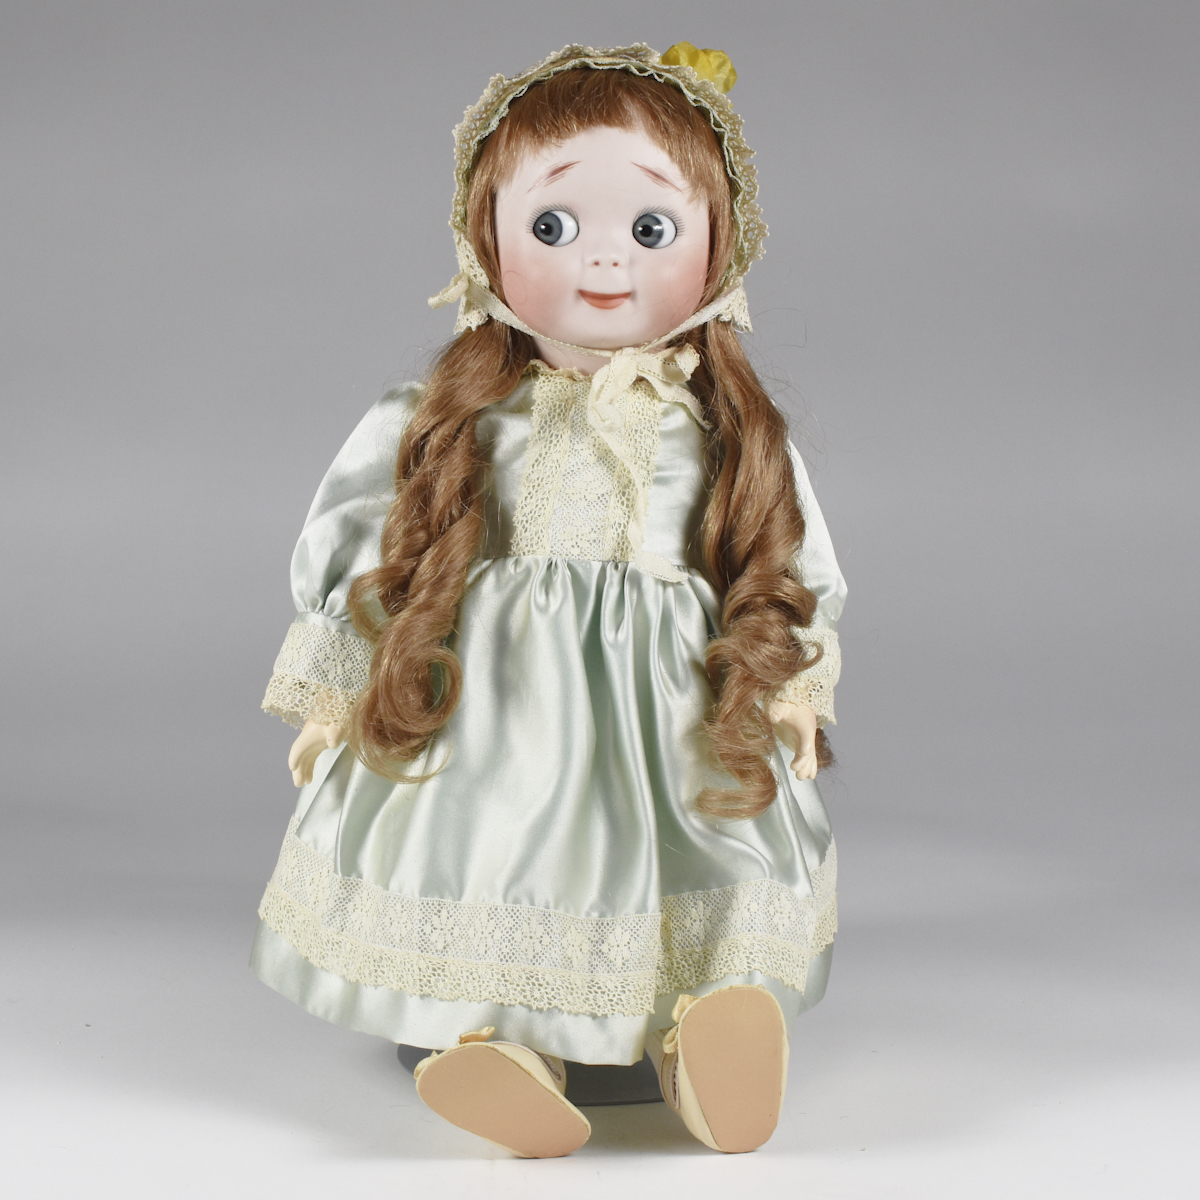 JDK Kestner 221 Porcelain Doll for Butler Brothers - Image 2 of 7